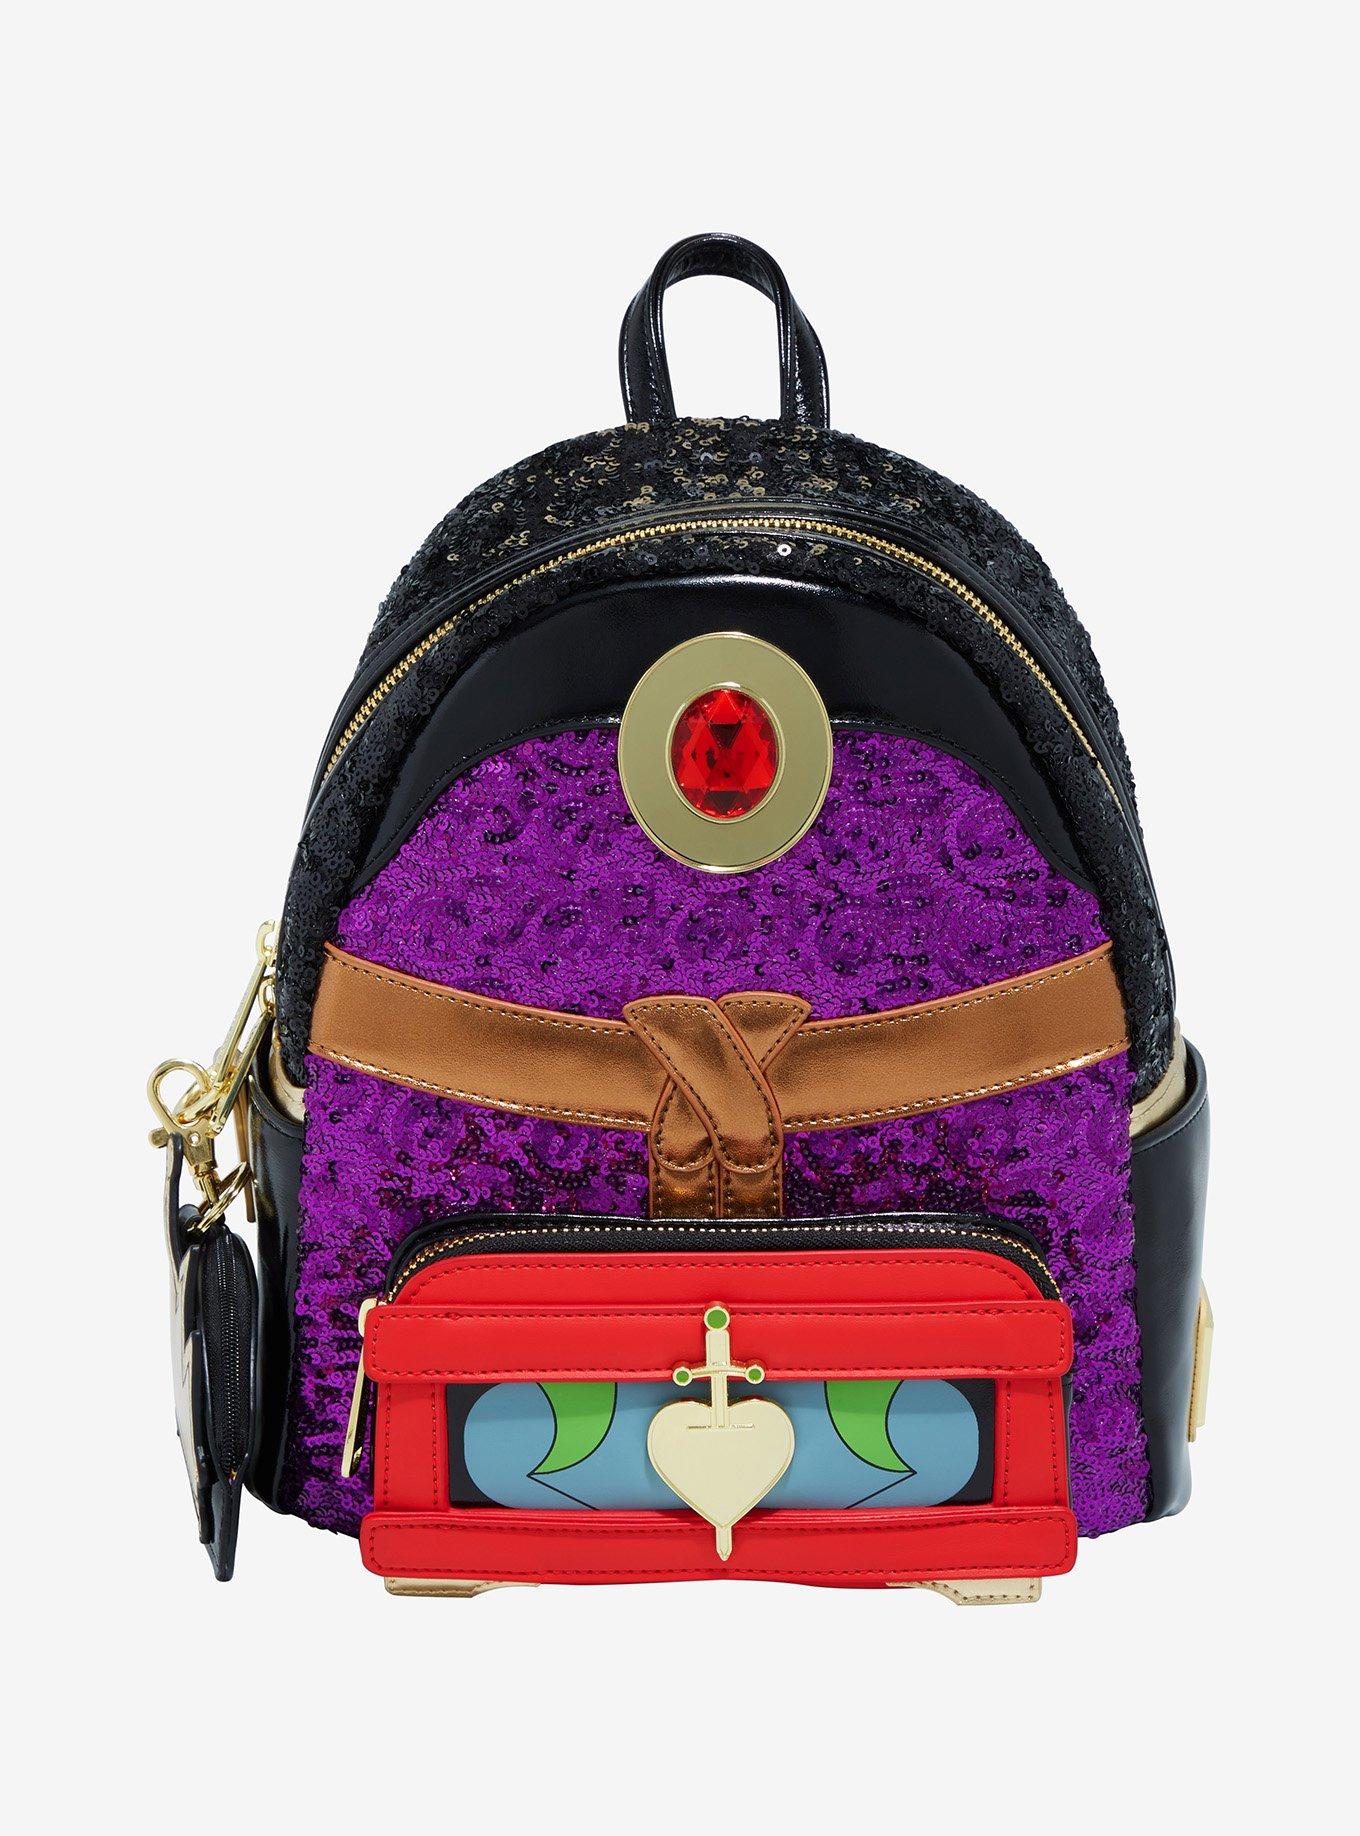 Let's open the Real Littles Disney Snow White Handbag